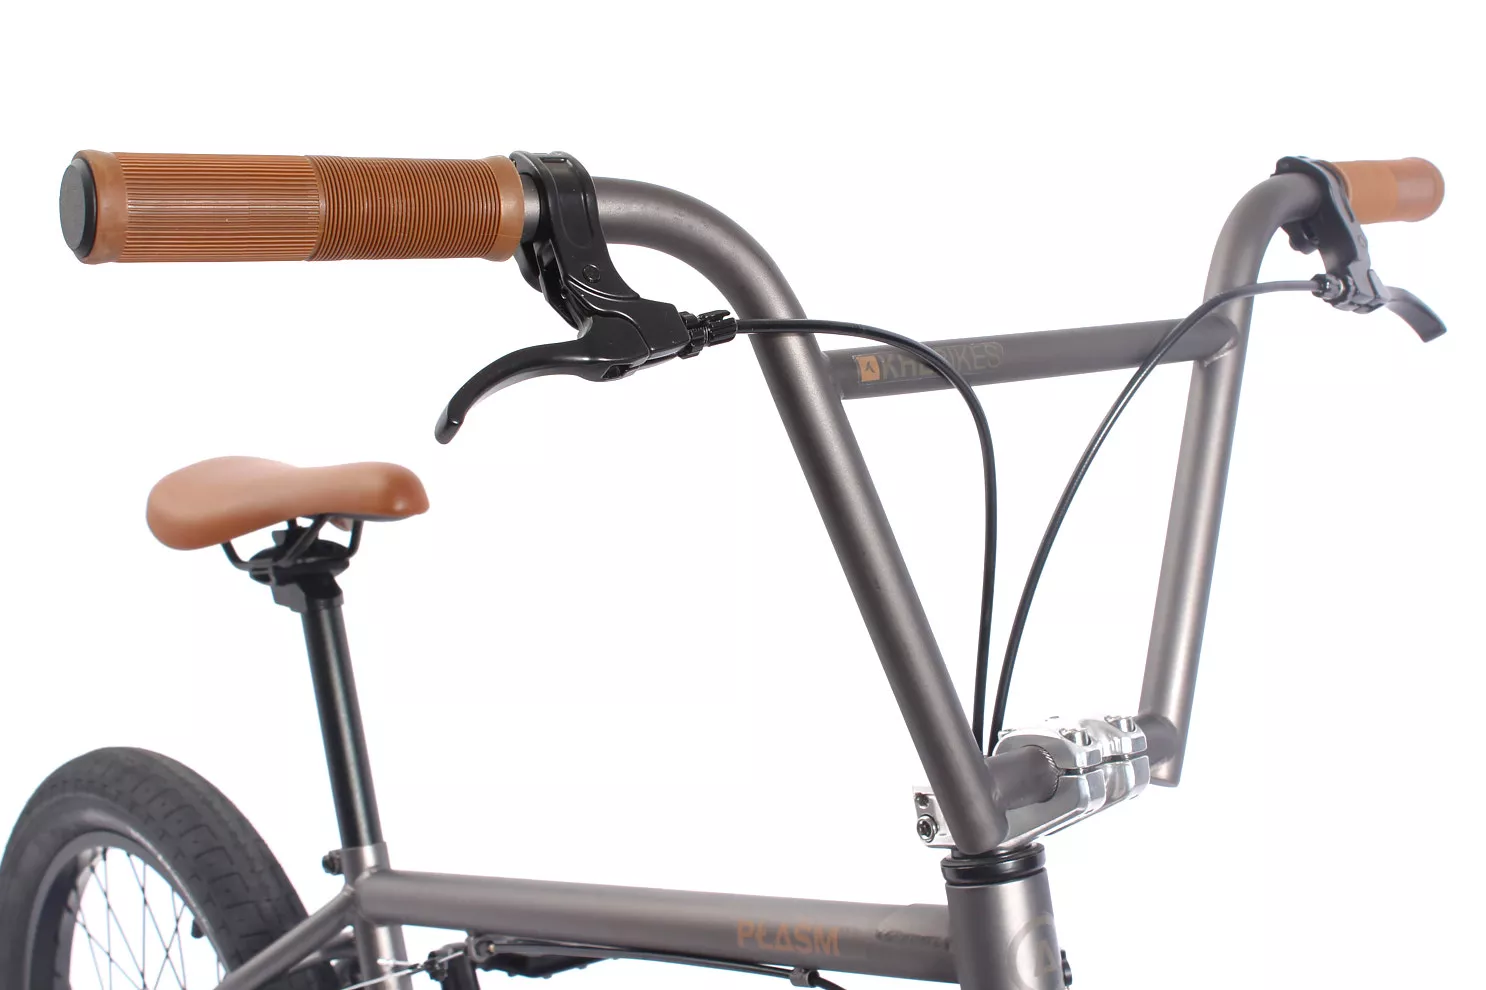 Bicicleta BMX KHE PLASM 20 pulgadas 11,1kg